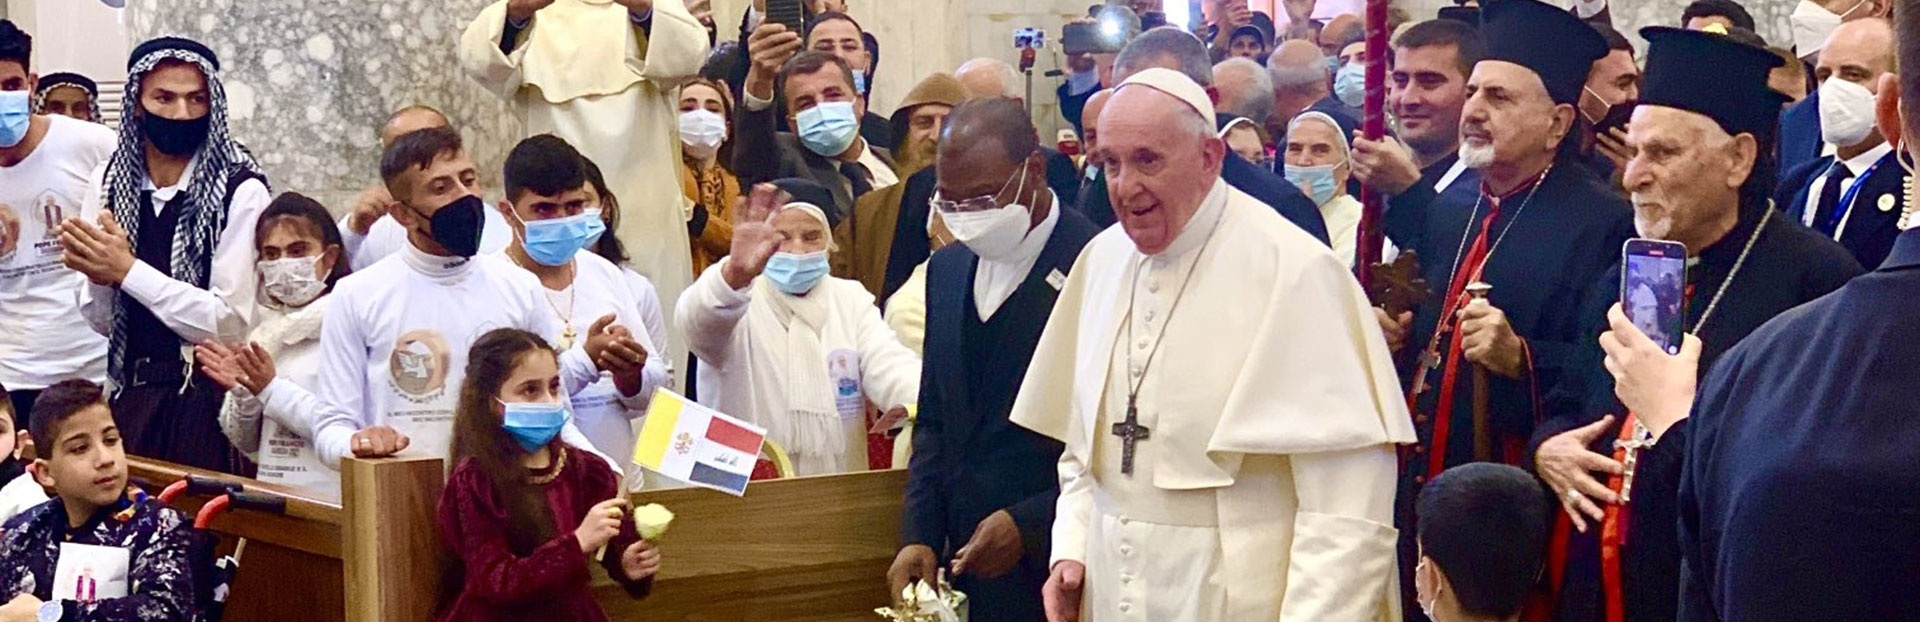 Padre Cassar: el Papa en Irak sembró la paz y la esperanza